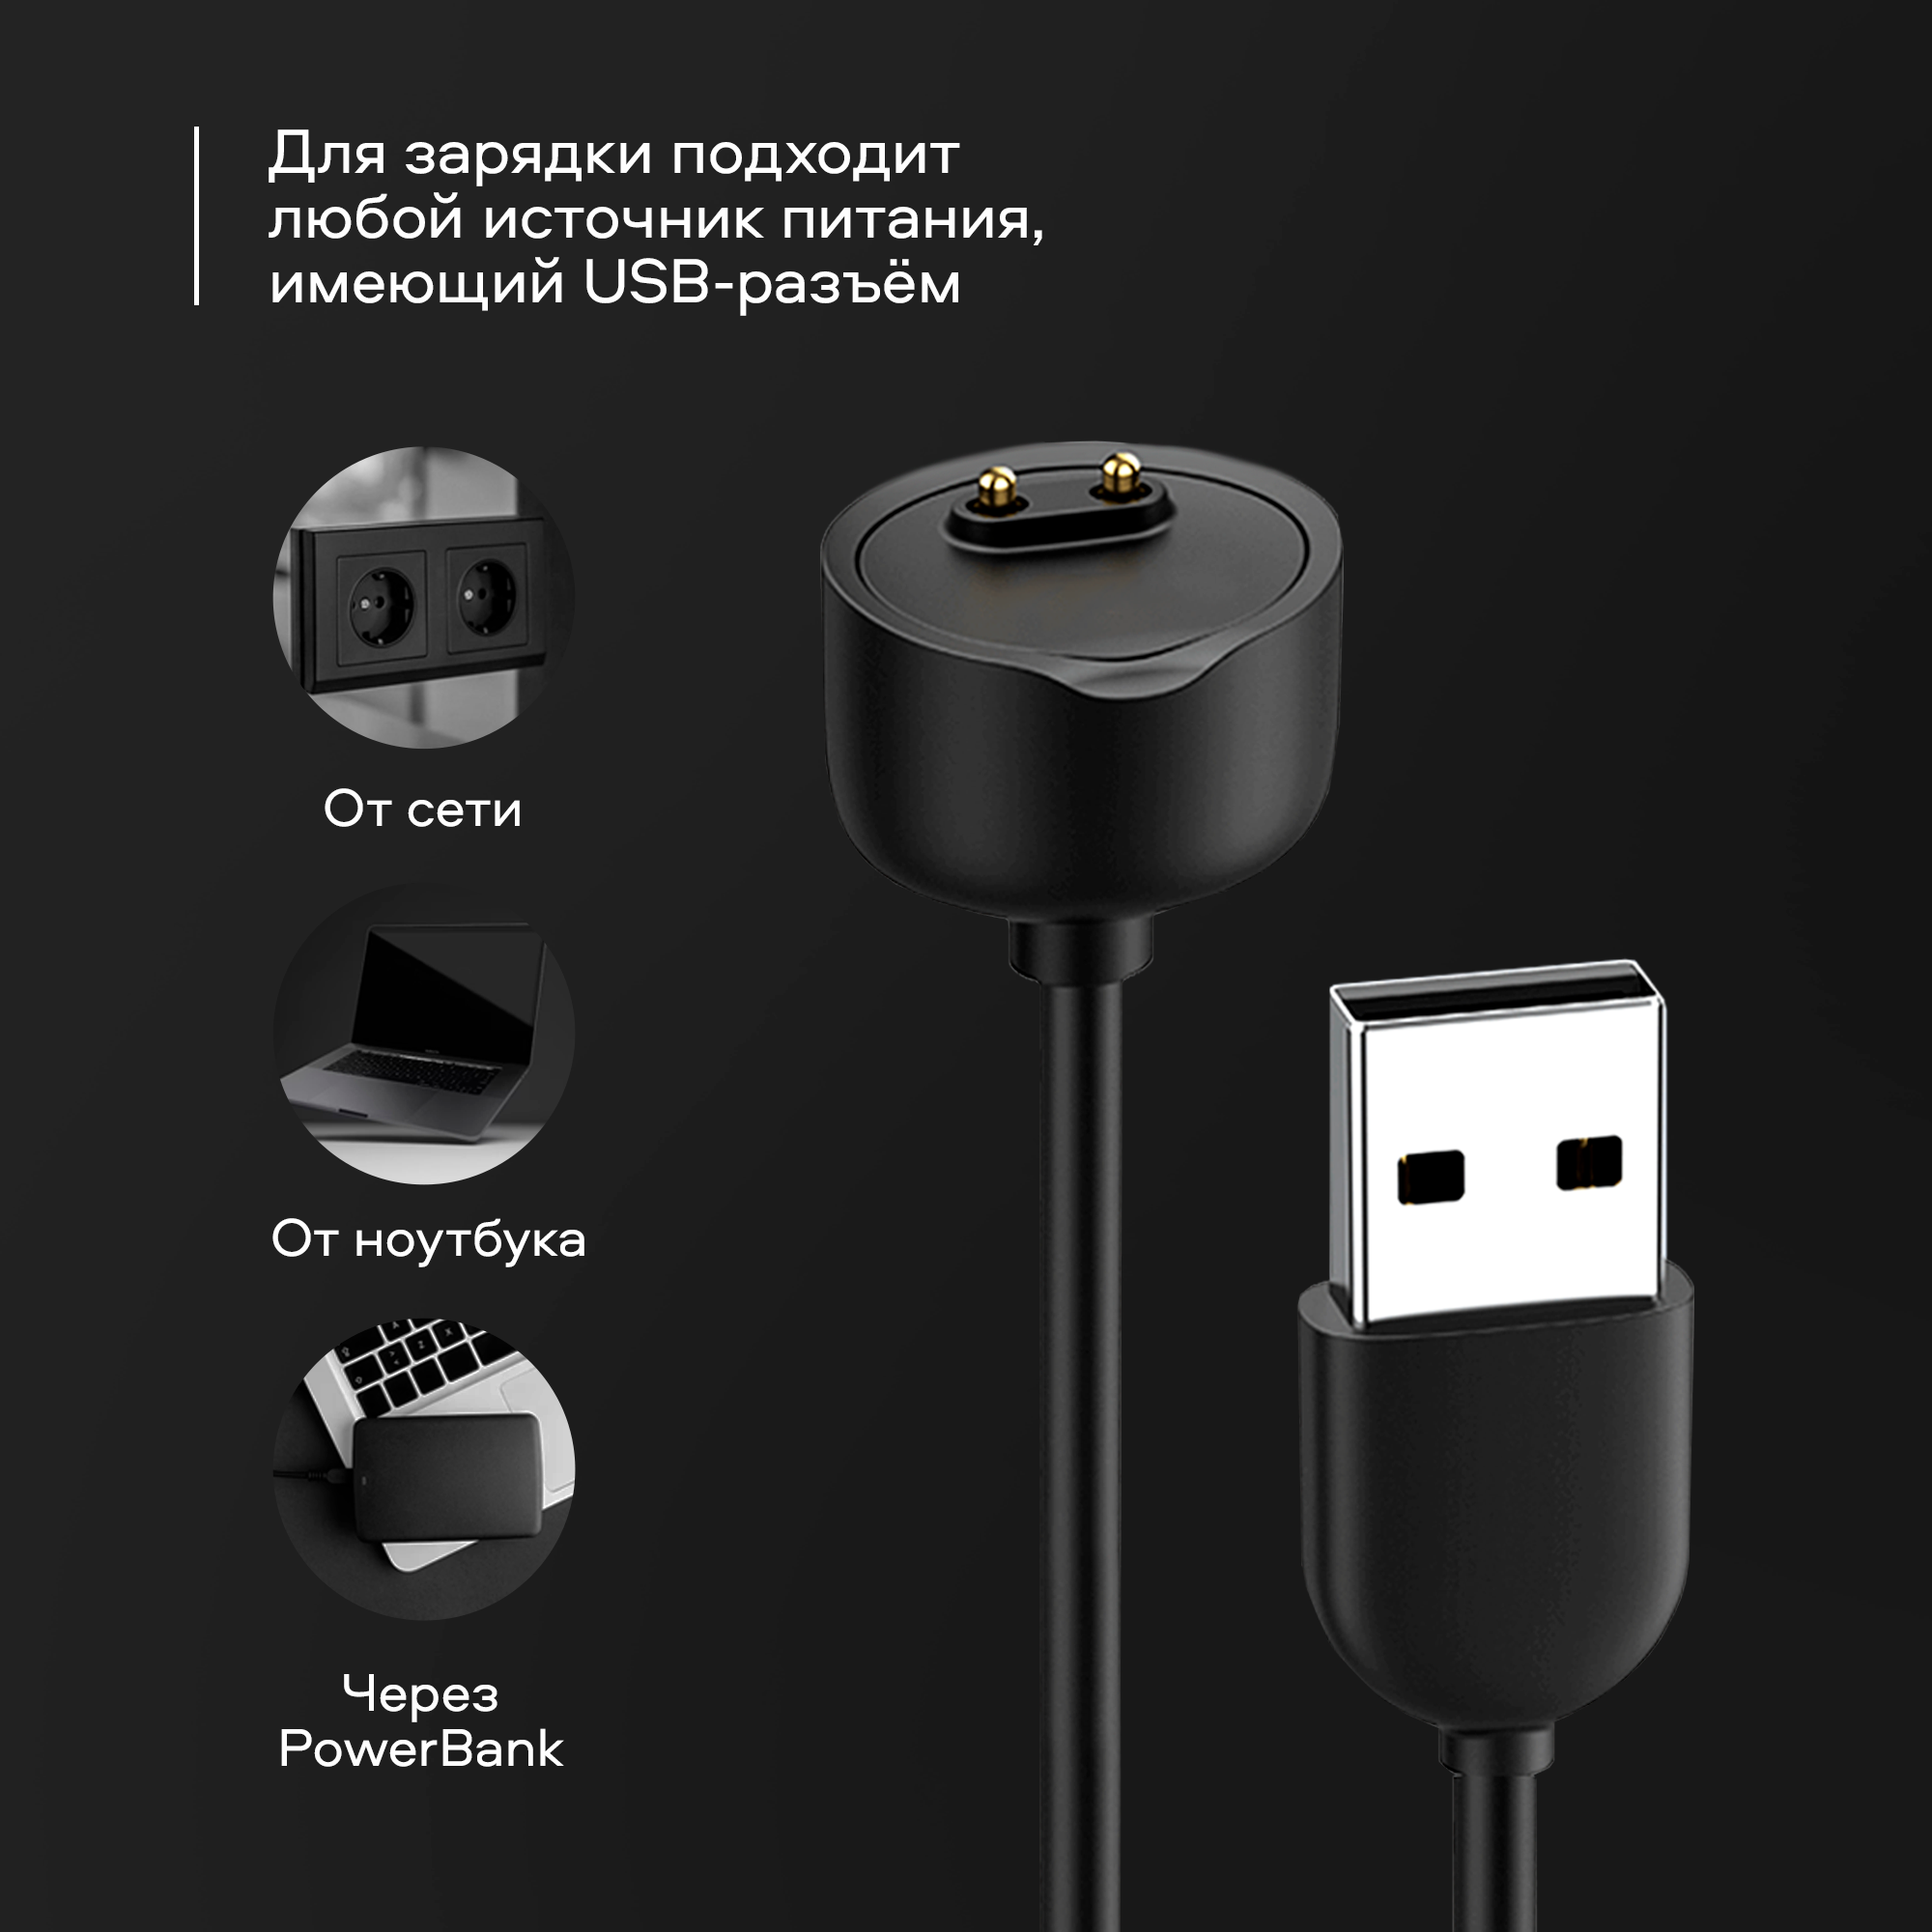 Кабель для зарядки USB "WALKER" C155 для Xiaomi Mi Band 5, 6, черный / зарядной провод питания, шнур для питания спортивных часов, зарядник для мибенд